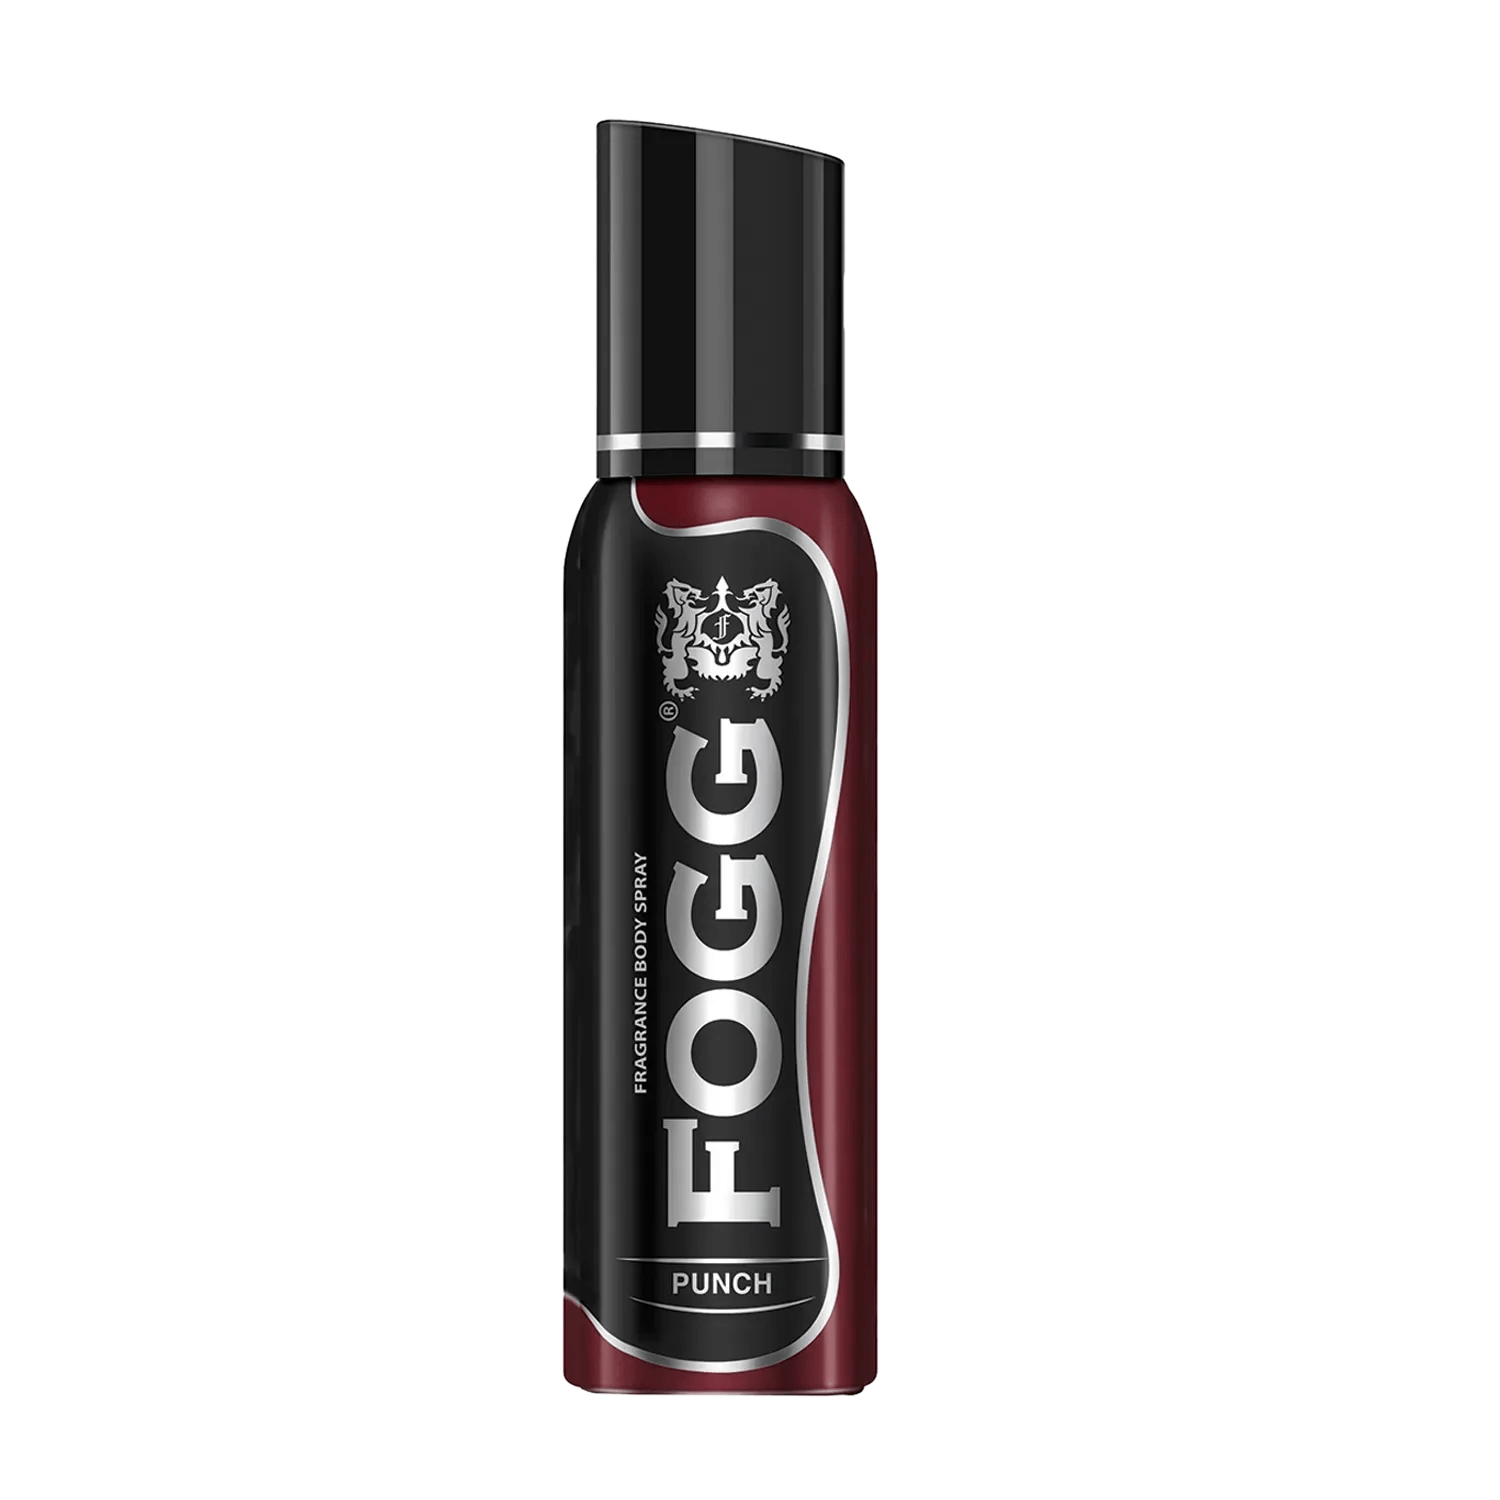 FOGG | FOGG Punch Fragrance Body Spray (150ml)